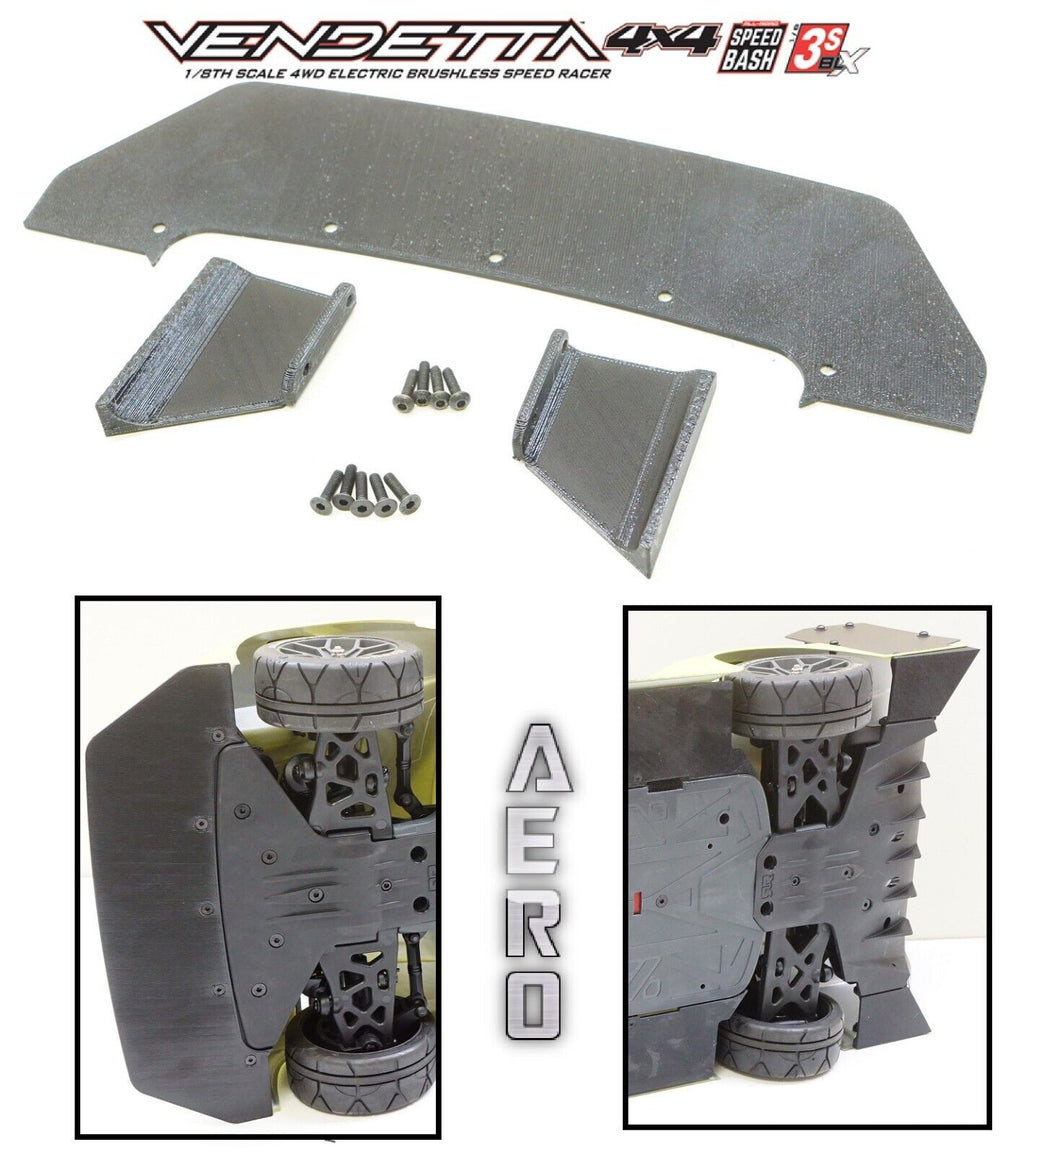 Front Splitter & Rear Aero Winglets Upgrade for Arrma Vendetta 3S BLX 100+ MPH